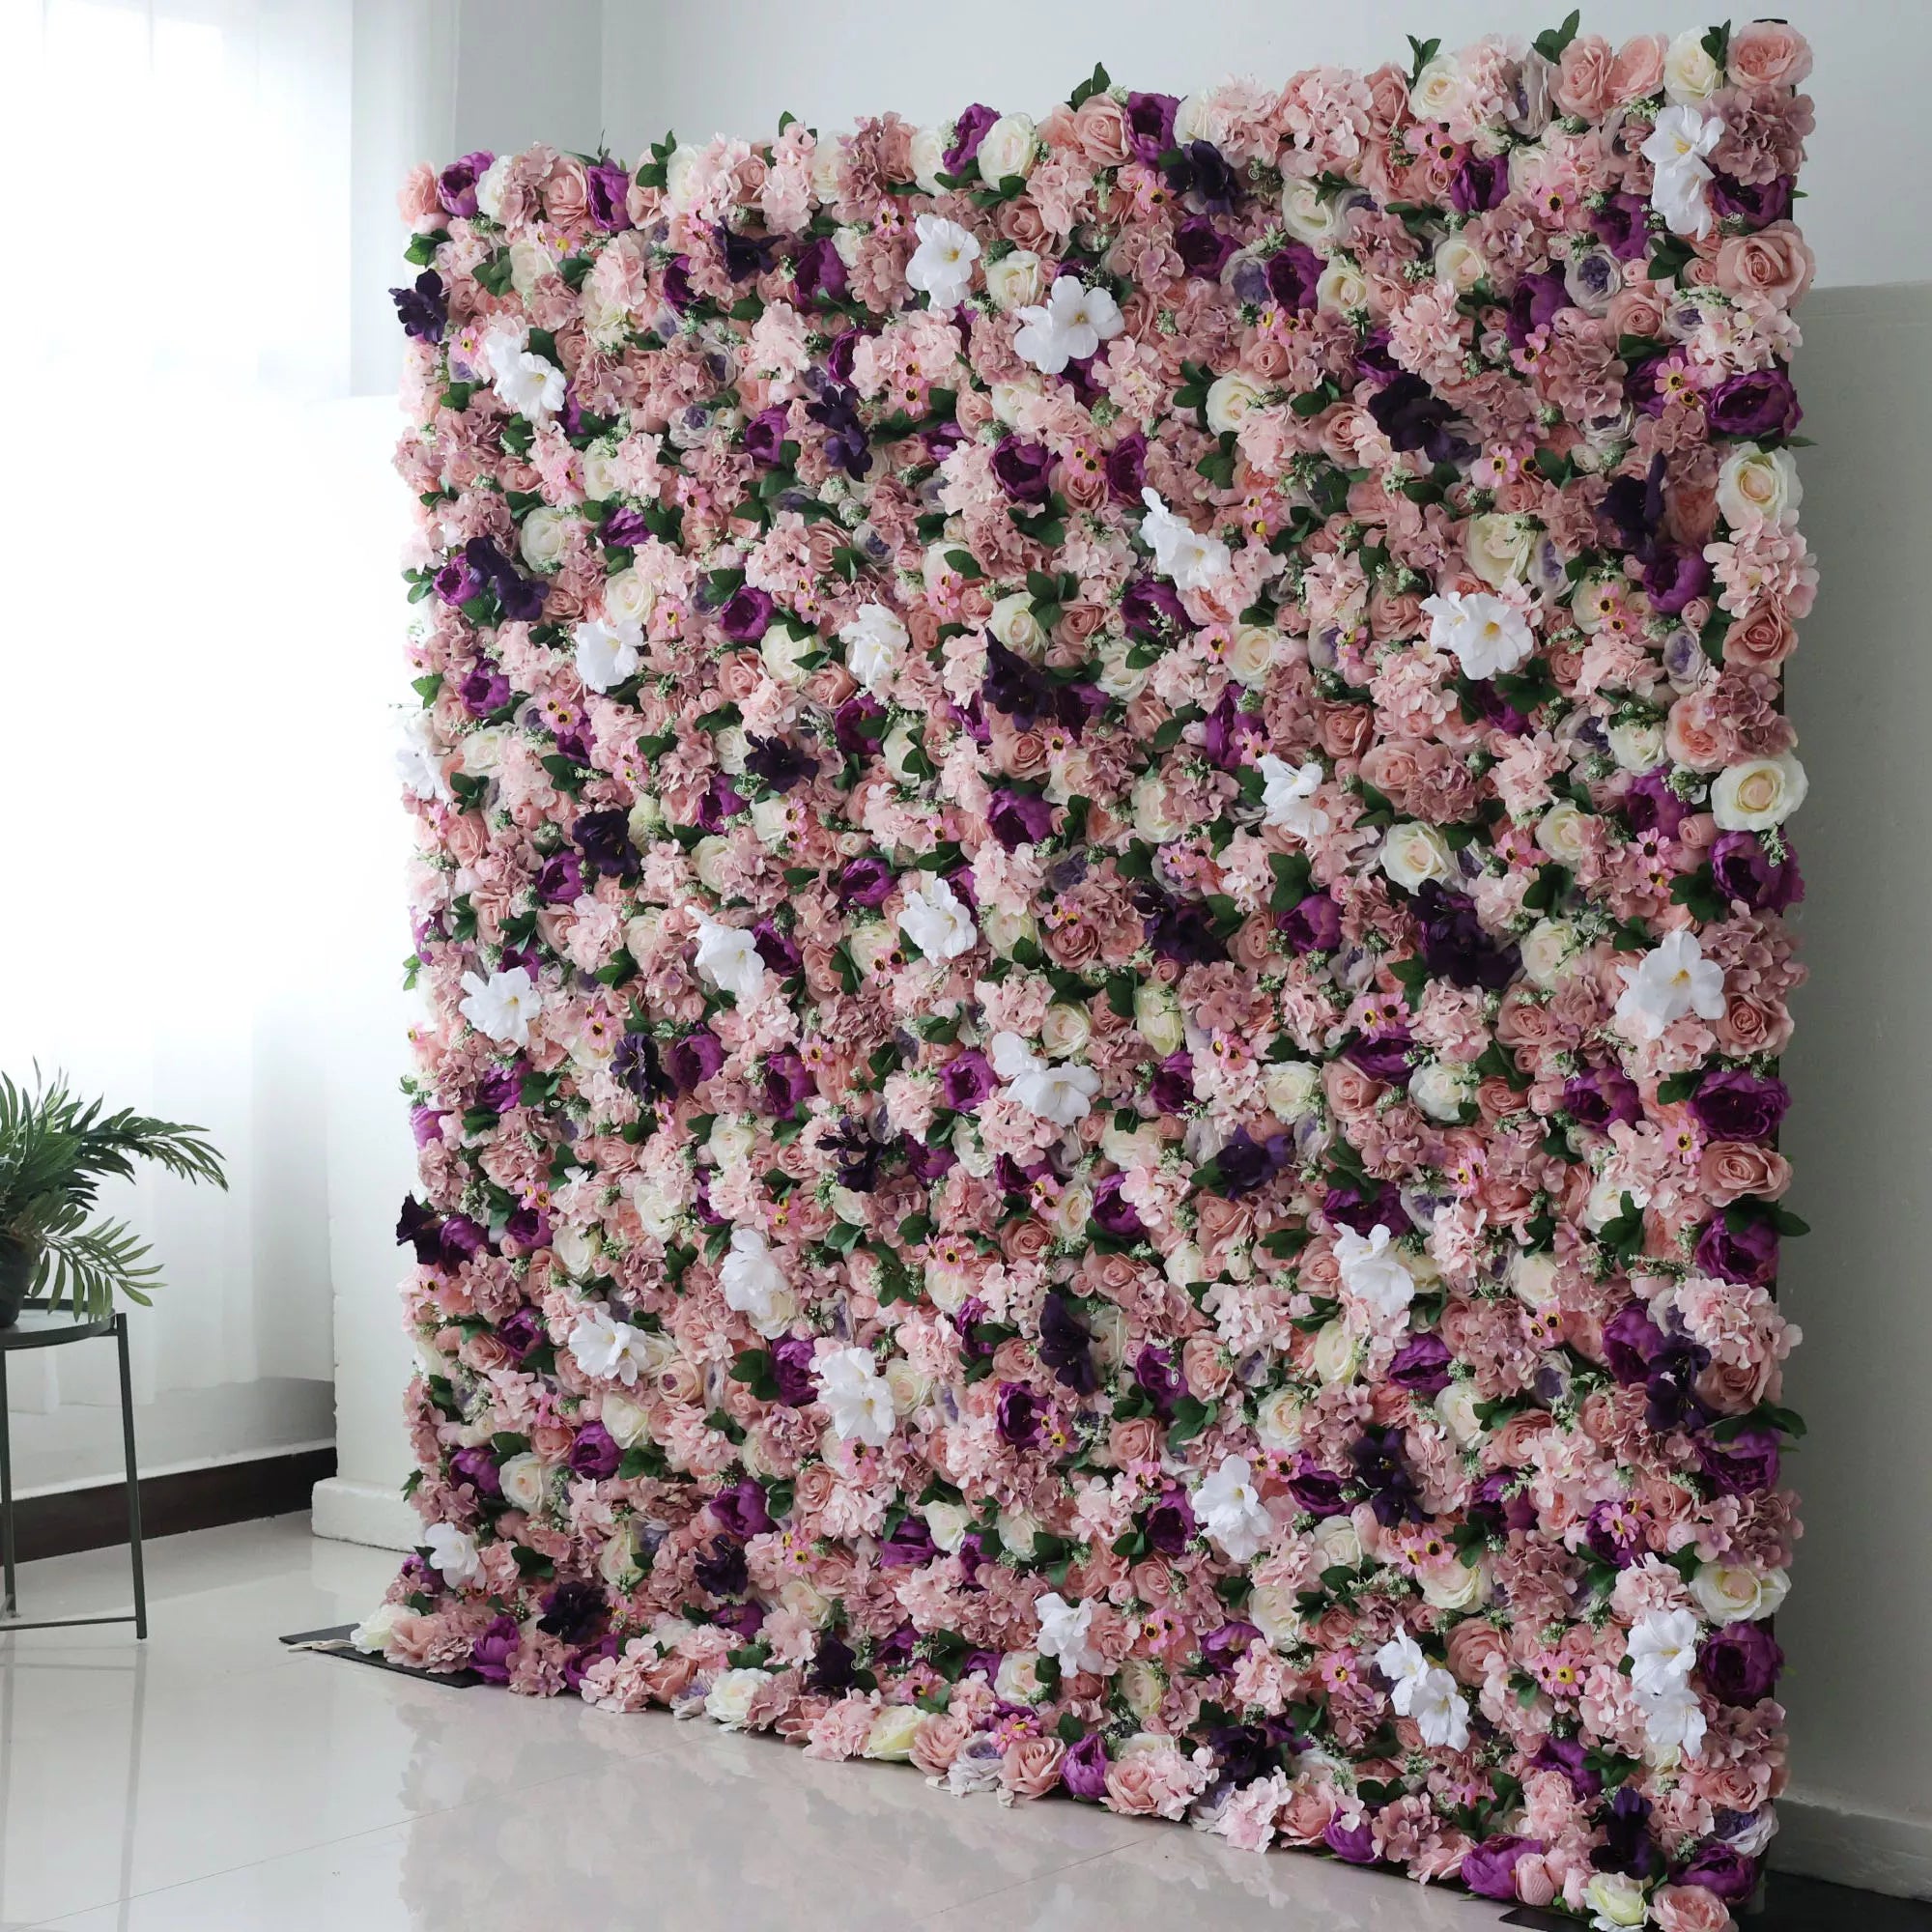 خلفية جدارية للزفاف من زهور فالار مزيجة صناعية بلون أحمر وردي وأرجواني داكن ، ديكور حفلات زهور ، مناسبة